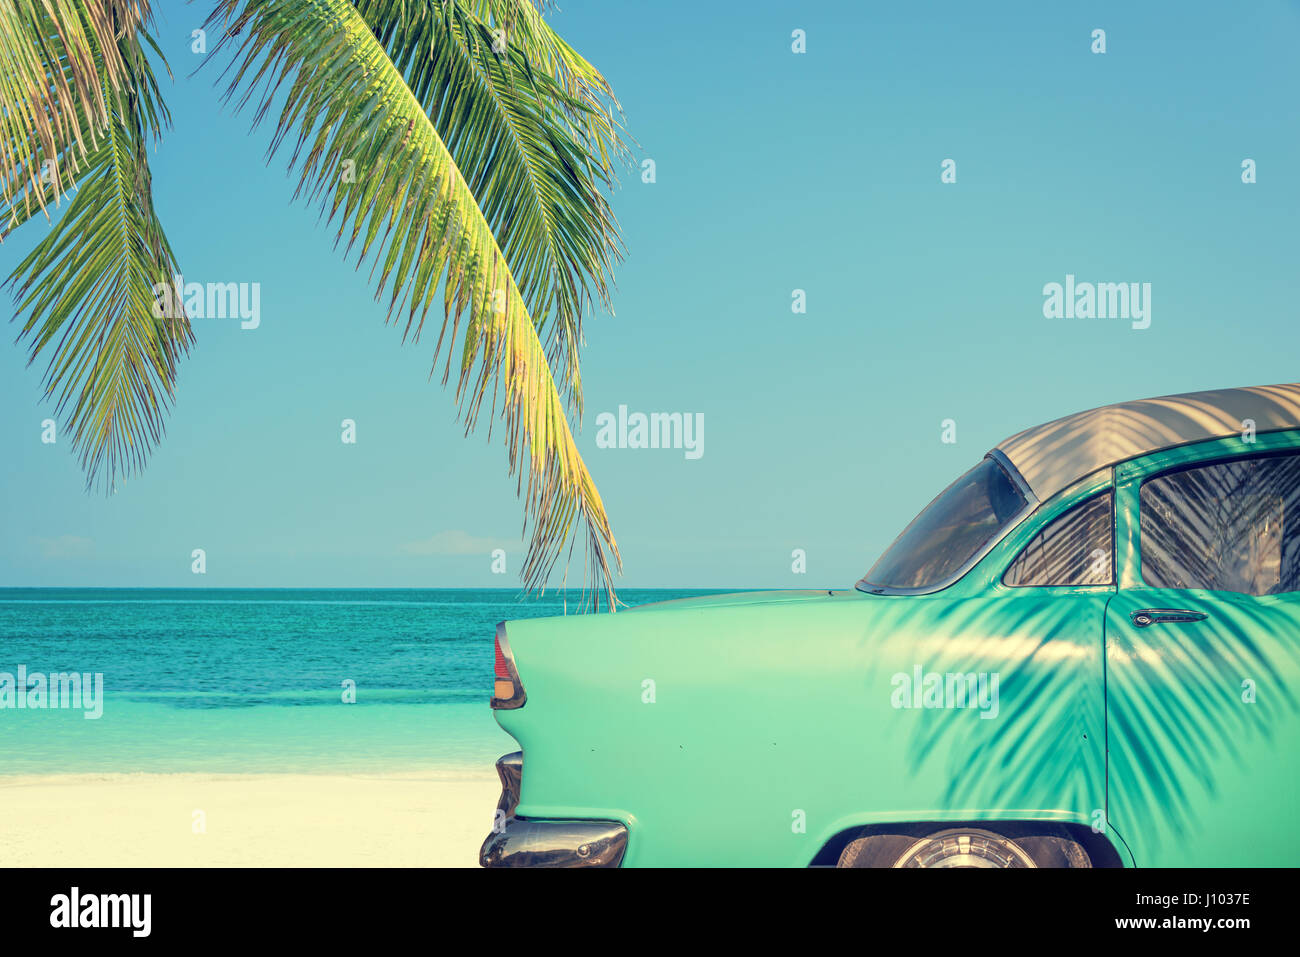 Auto classica su una spiaggia tropicale con palme, processo vintage Foto Stock